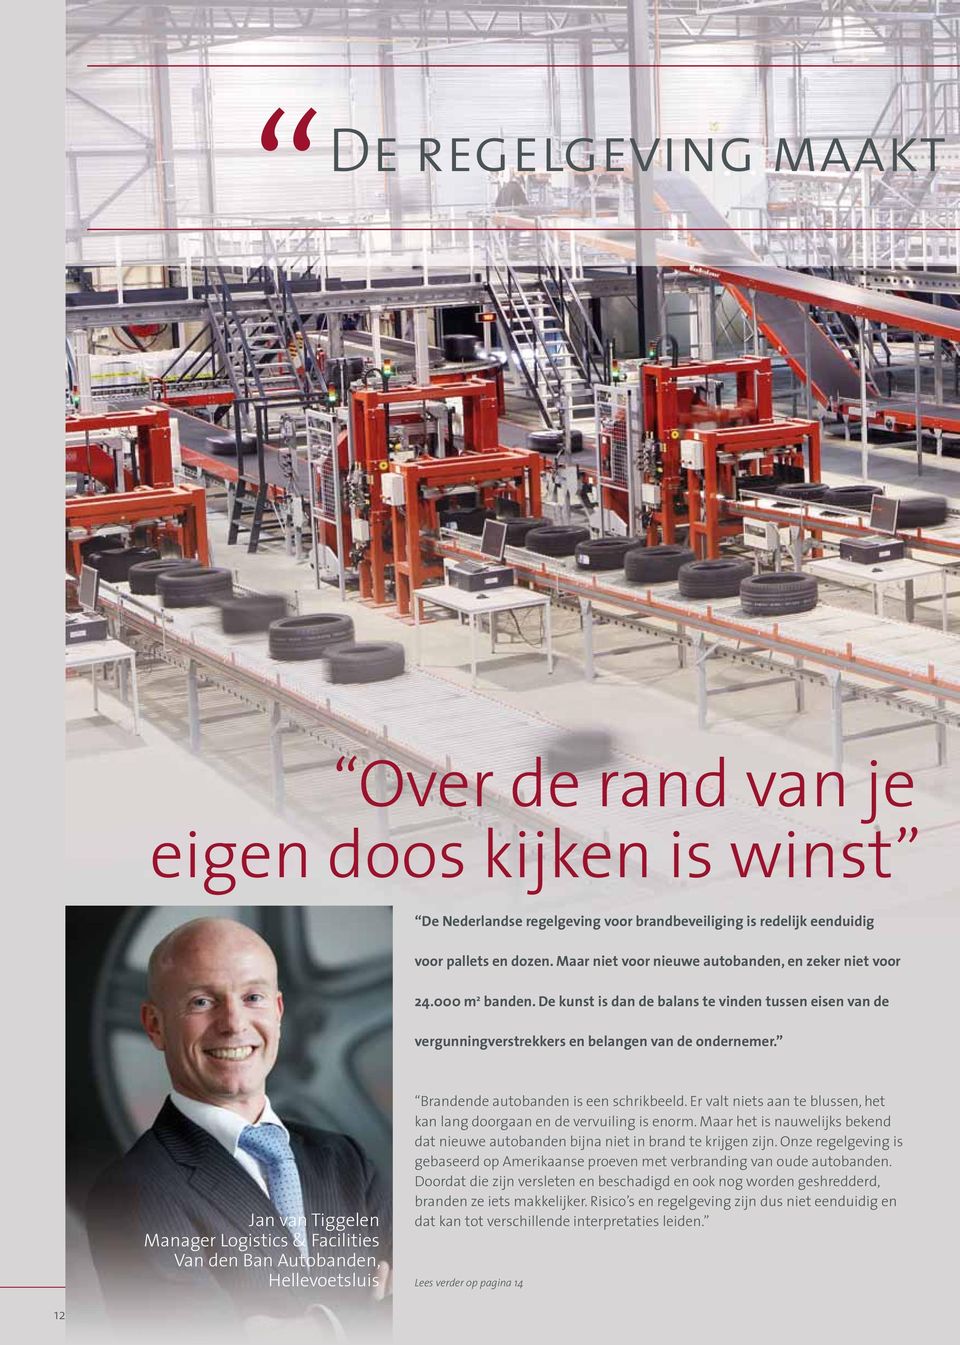 Jan van Tiggelen Manager Logistics & Facilities Van den Ban Autobanden, Hellevoetsluis Brandende autobanden is een schrikbeeld.